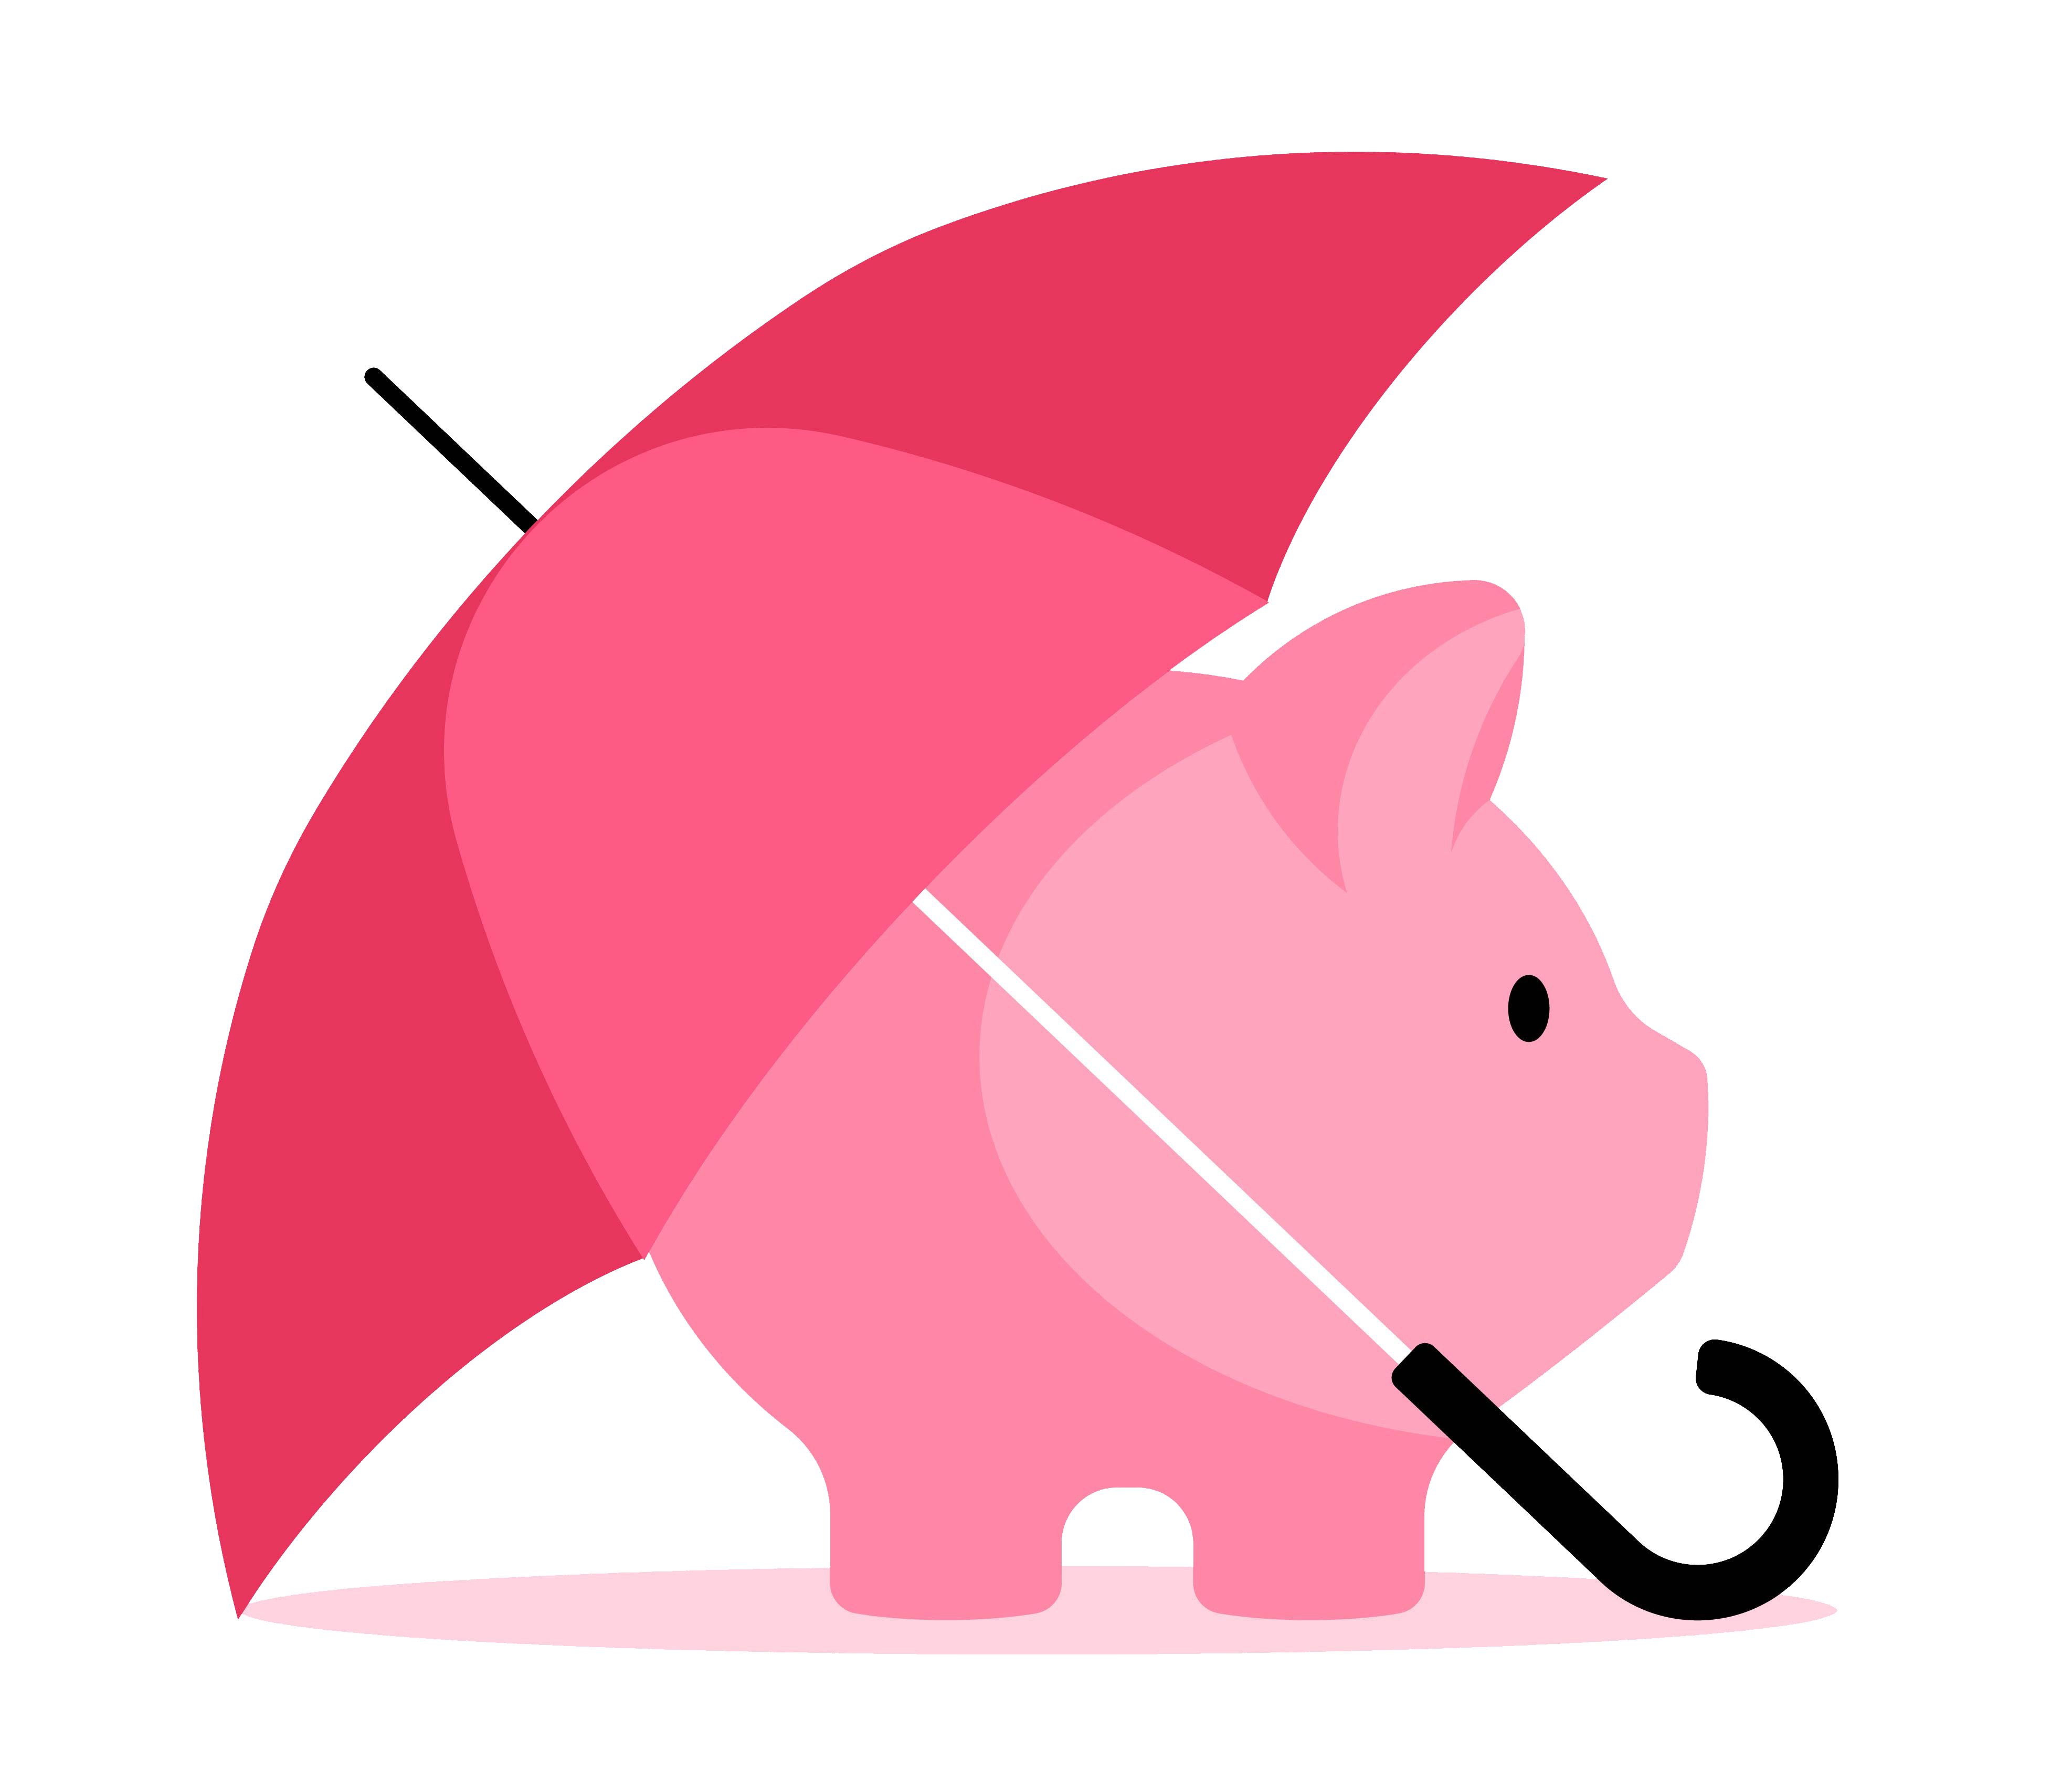 Graphic of piggy bank under umbrella